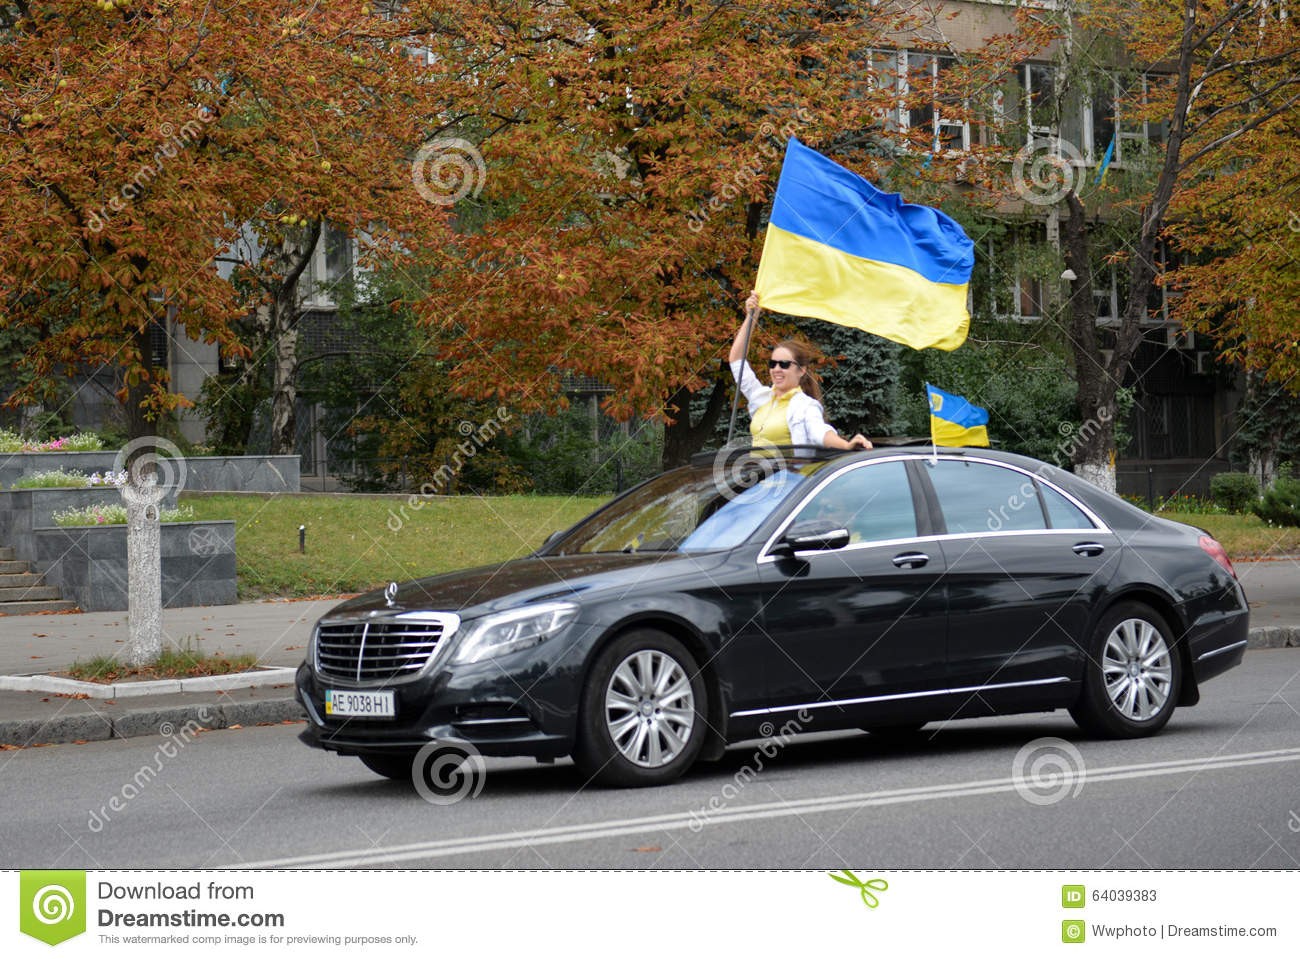 Uzmanību zibakcija! Auto Brīvības brauciens ar Ukrainas karogiem gar Krievijas vēstniecību. Aicināti visi! (Bilde 1)